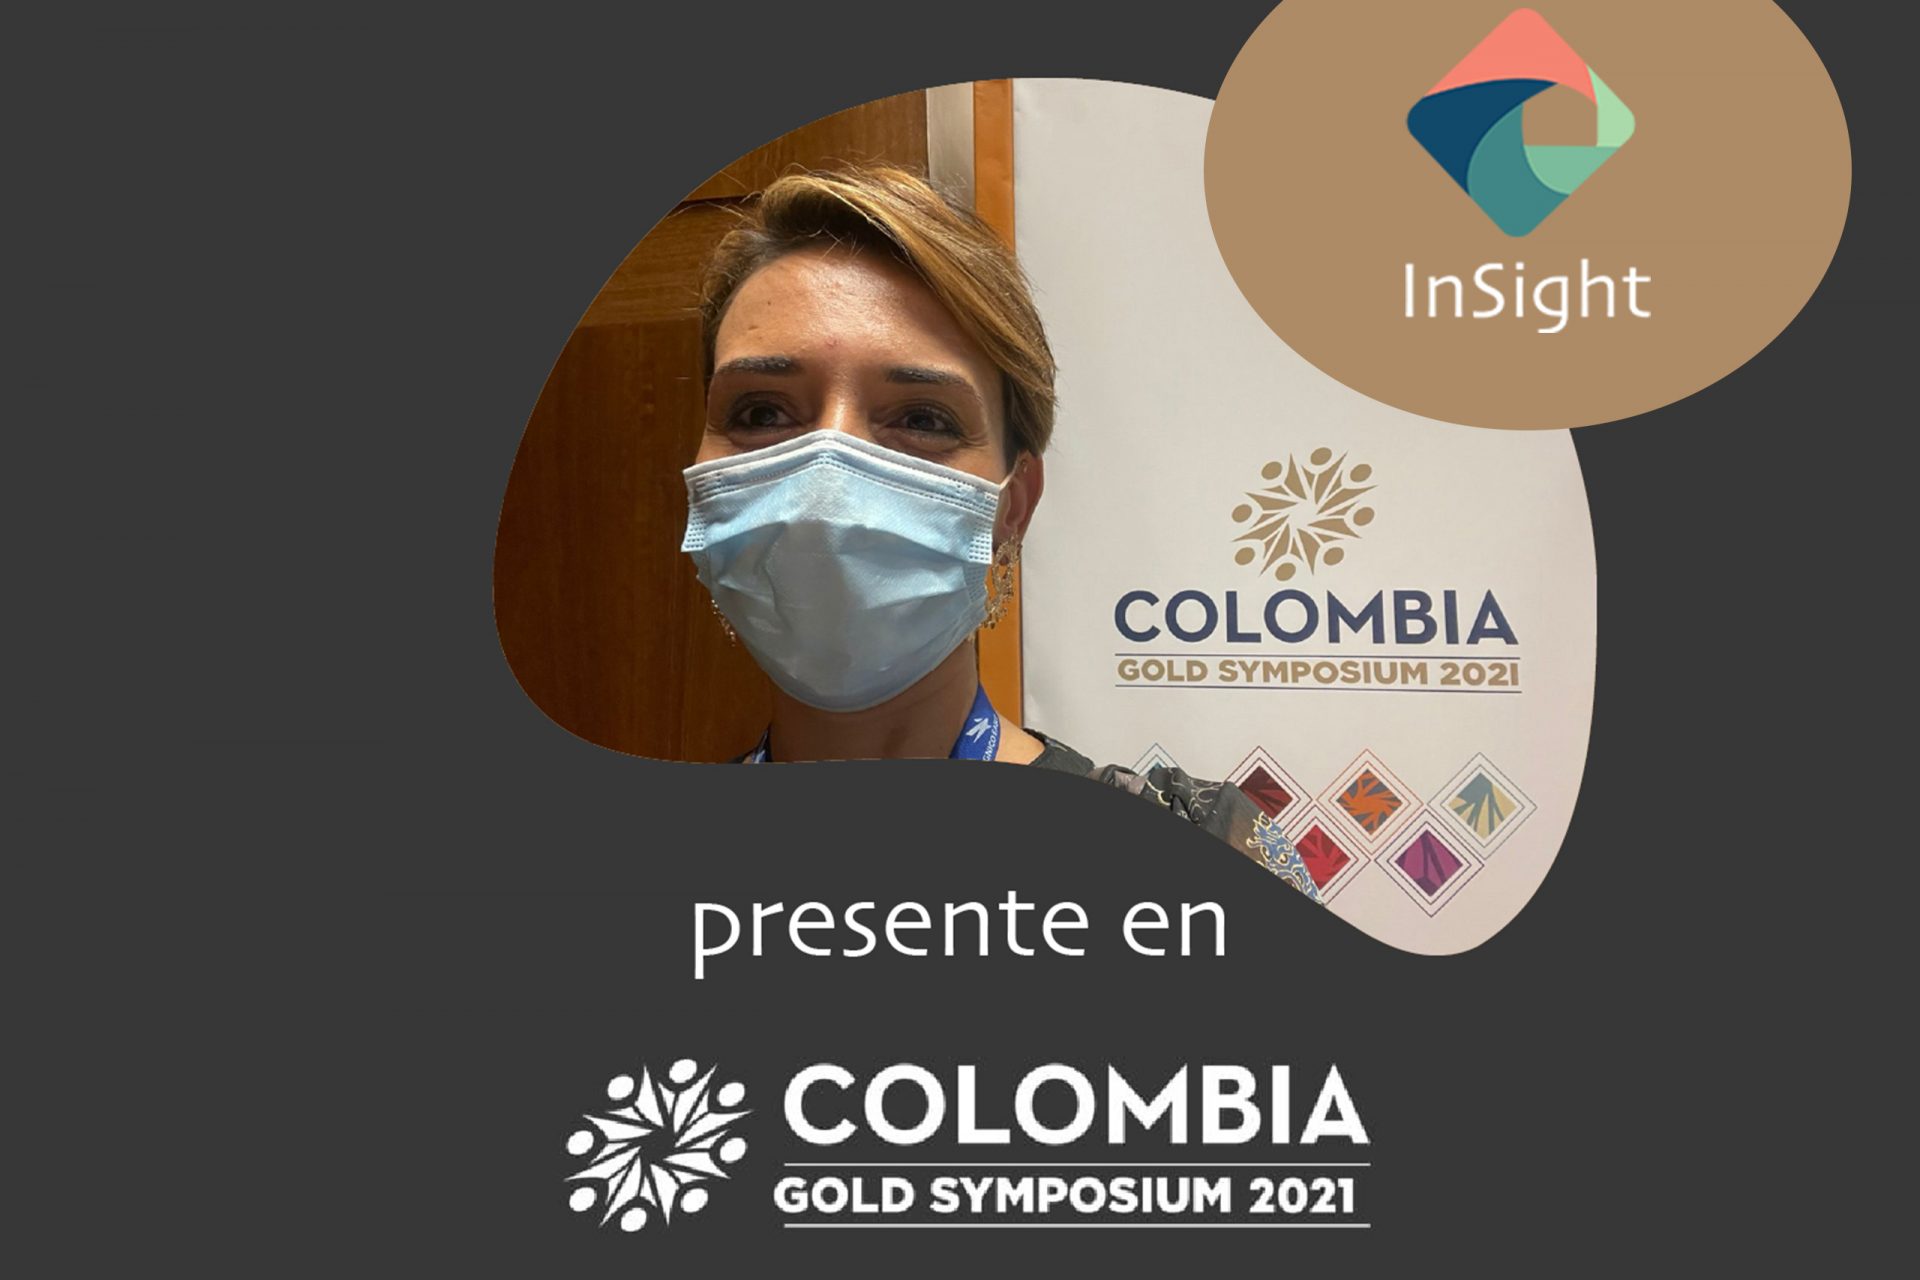 Colômbia Gold Symposium: Conclusões de uma Perspectiva Social